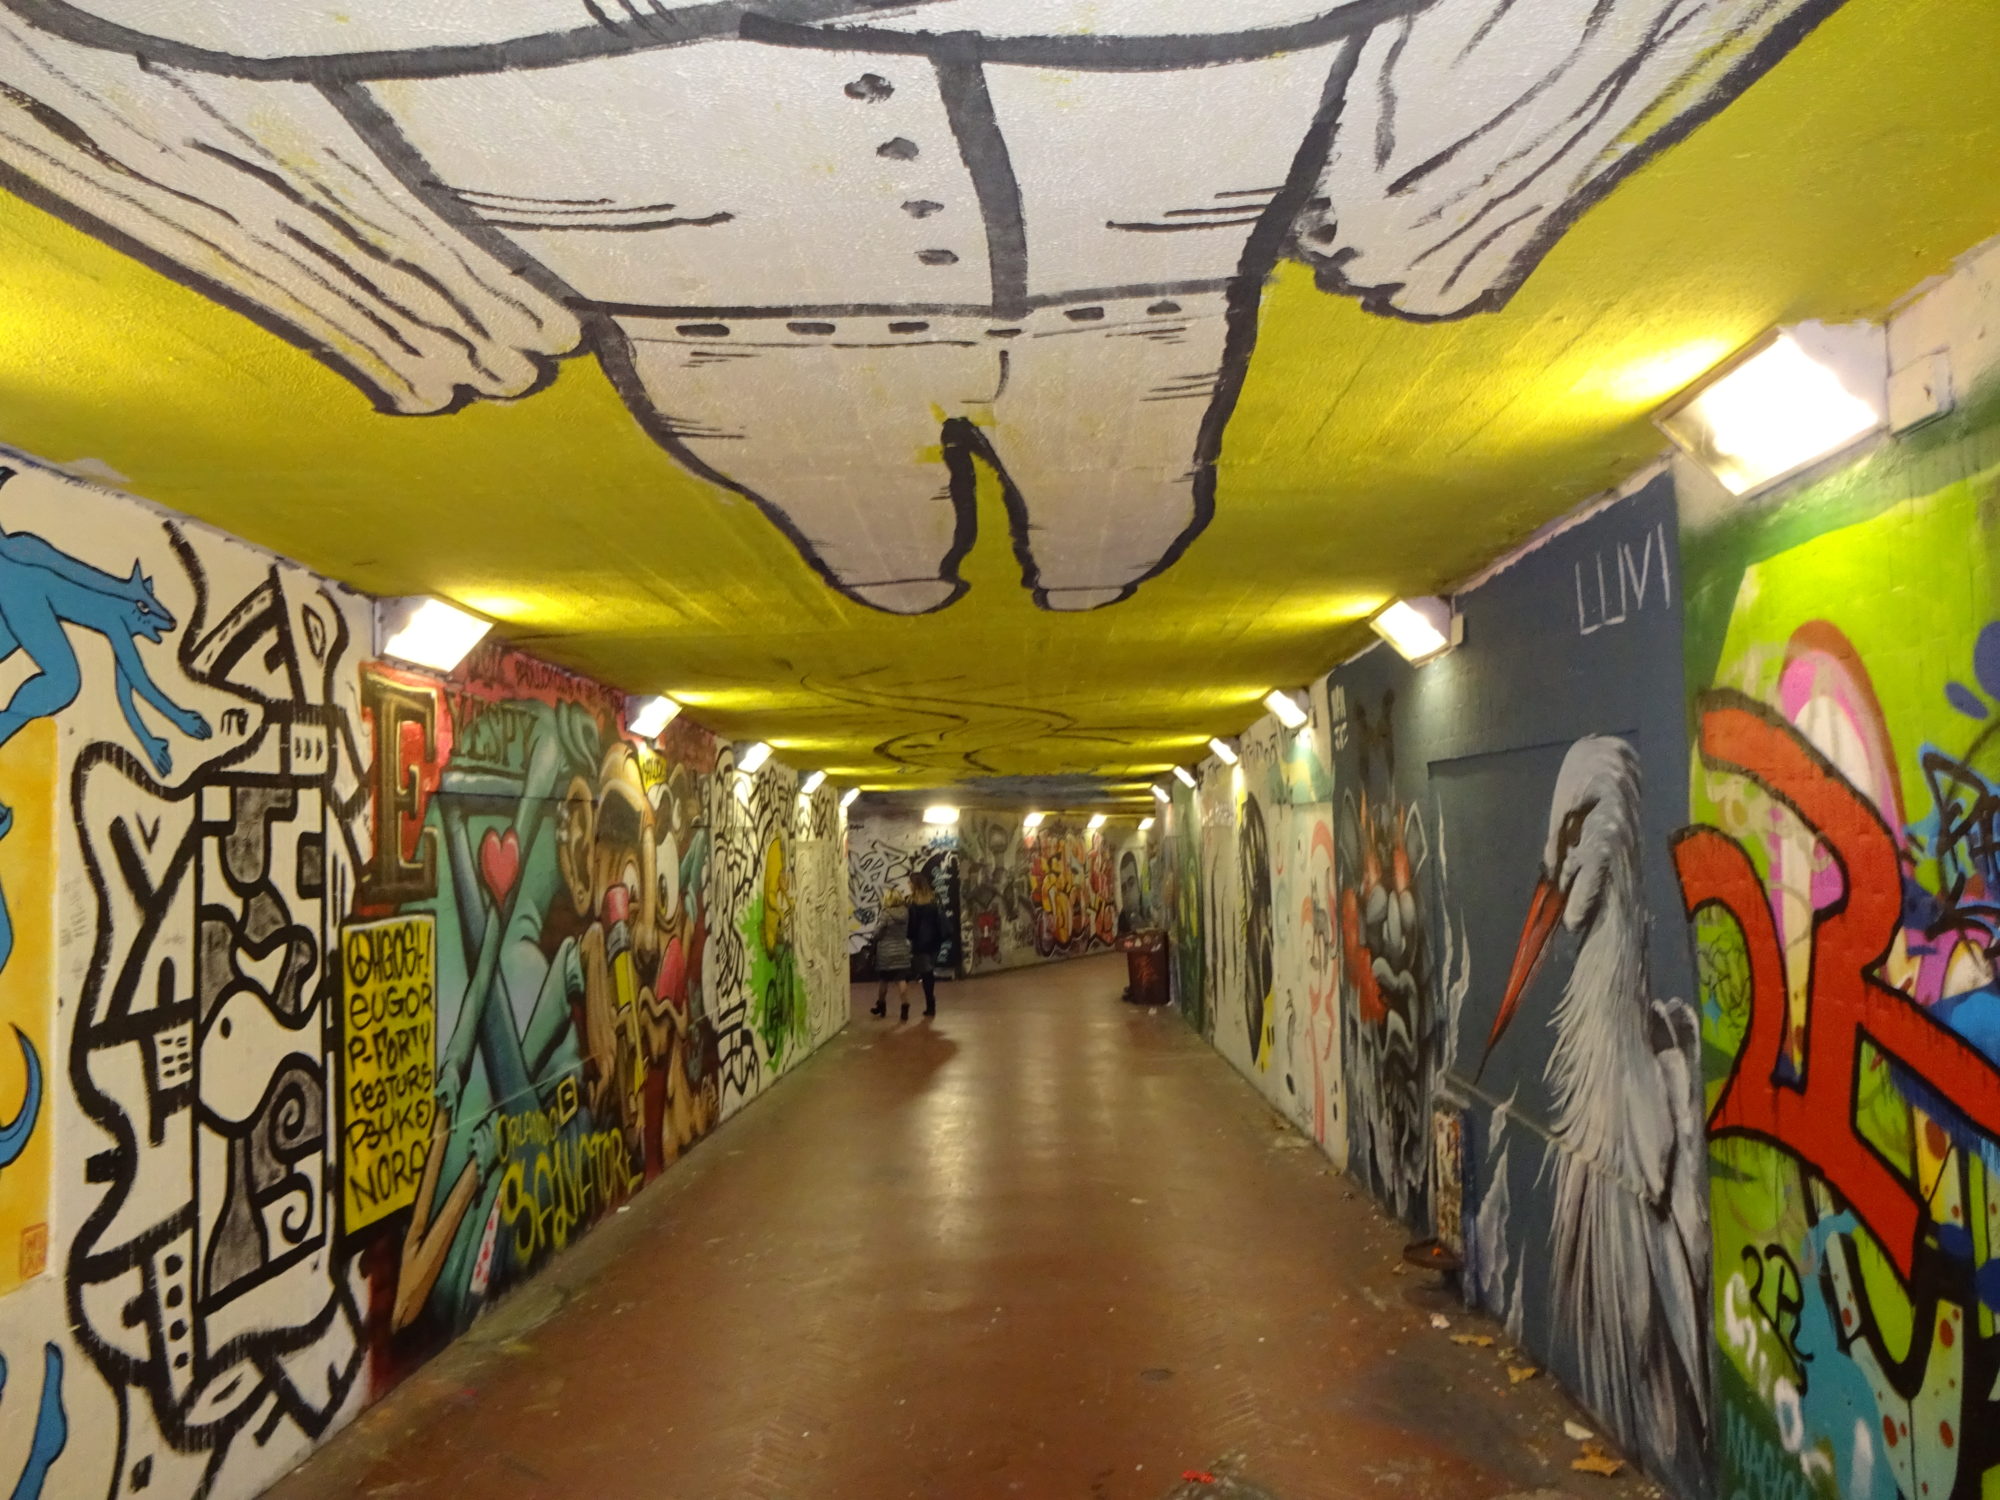 Graffiti in Tunnel